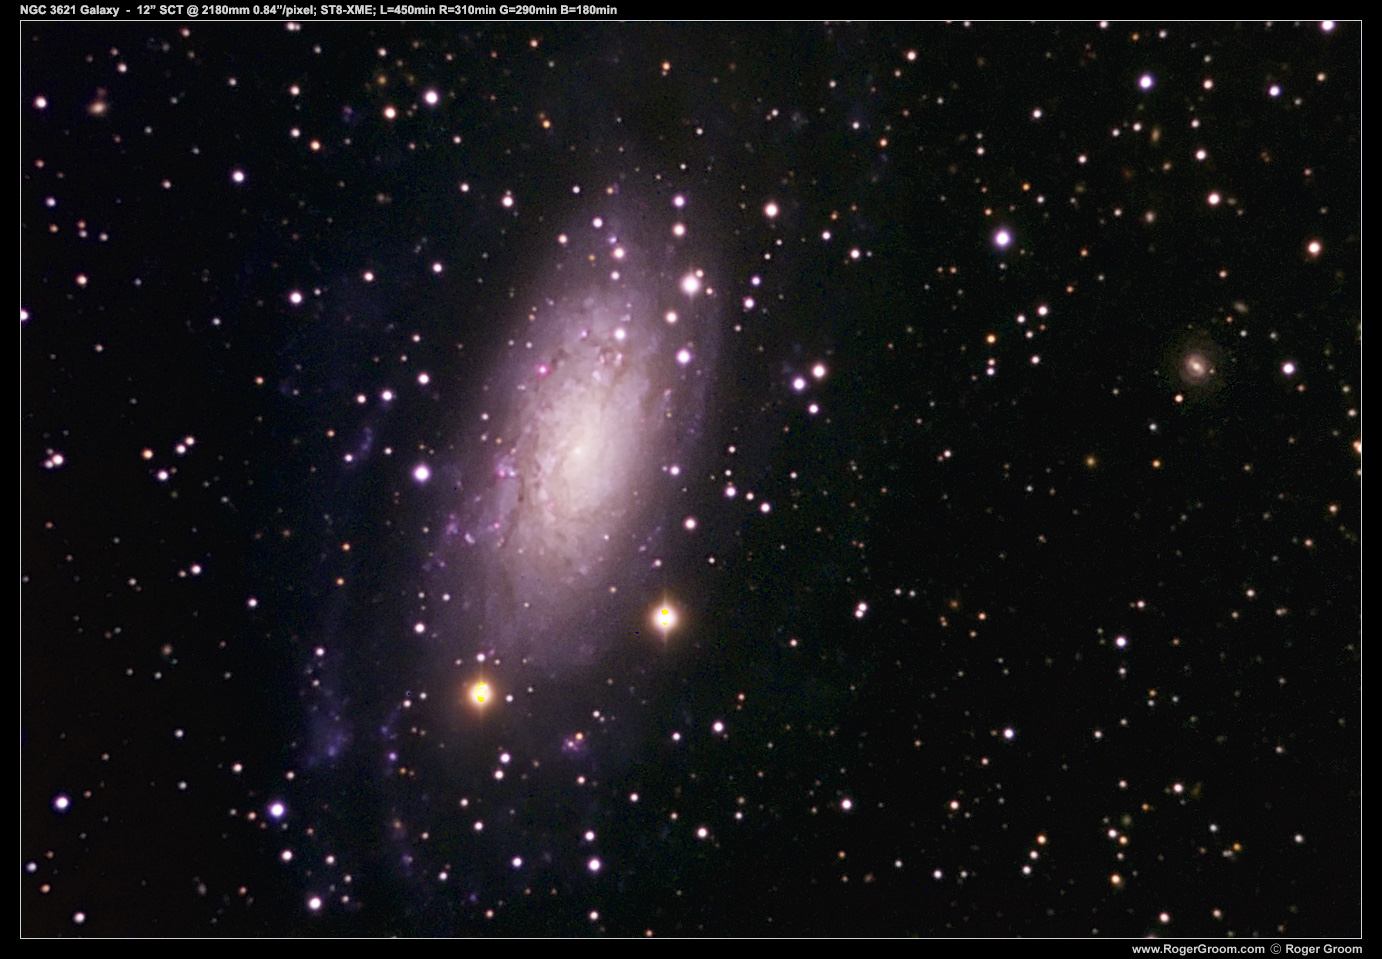 NGC 3621 Spiral Galaxy 12” SCT @ 2180mm 0.84”/pixel; ST8-XME; L=450min R=310min G=290min B=180min